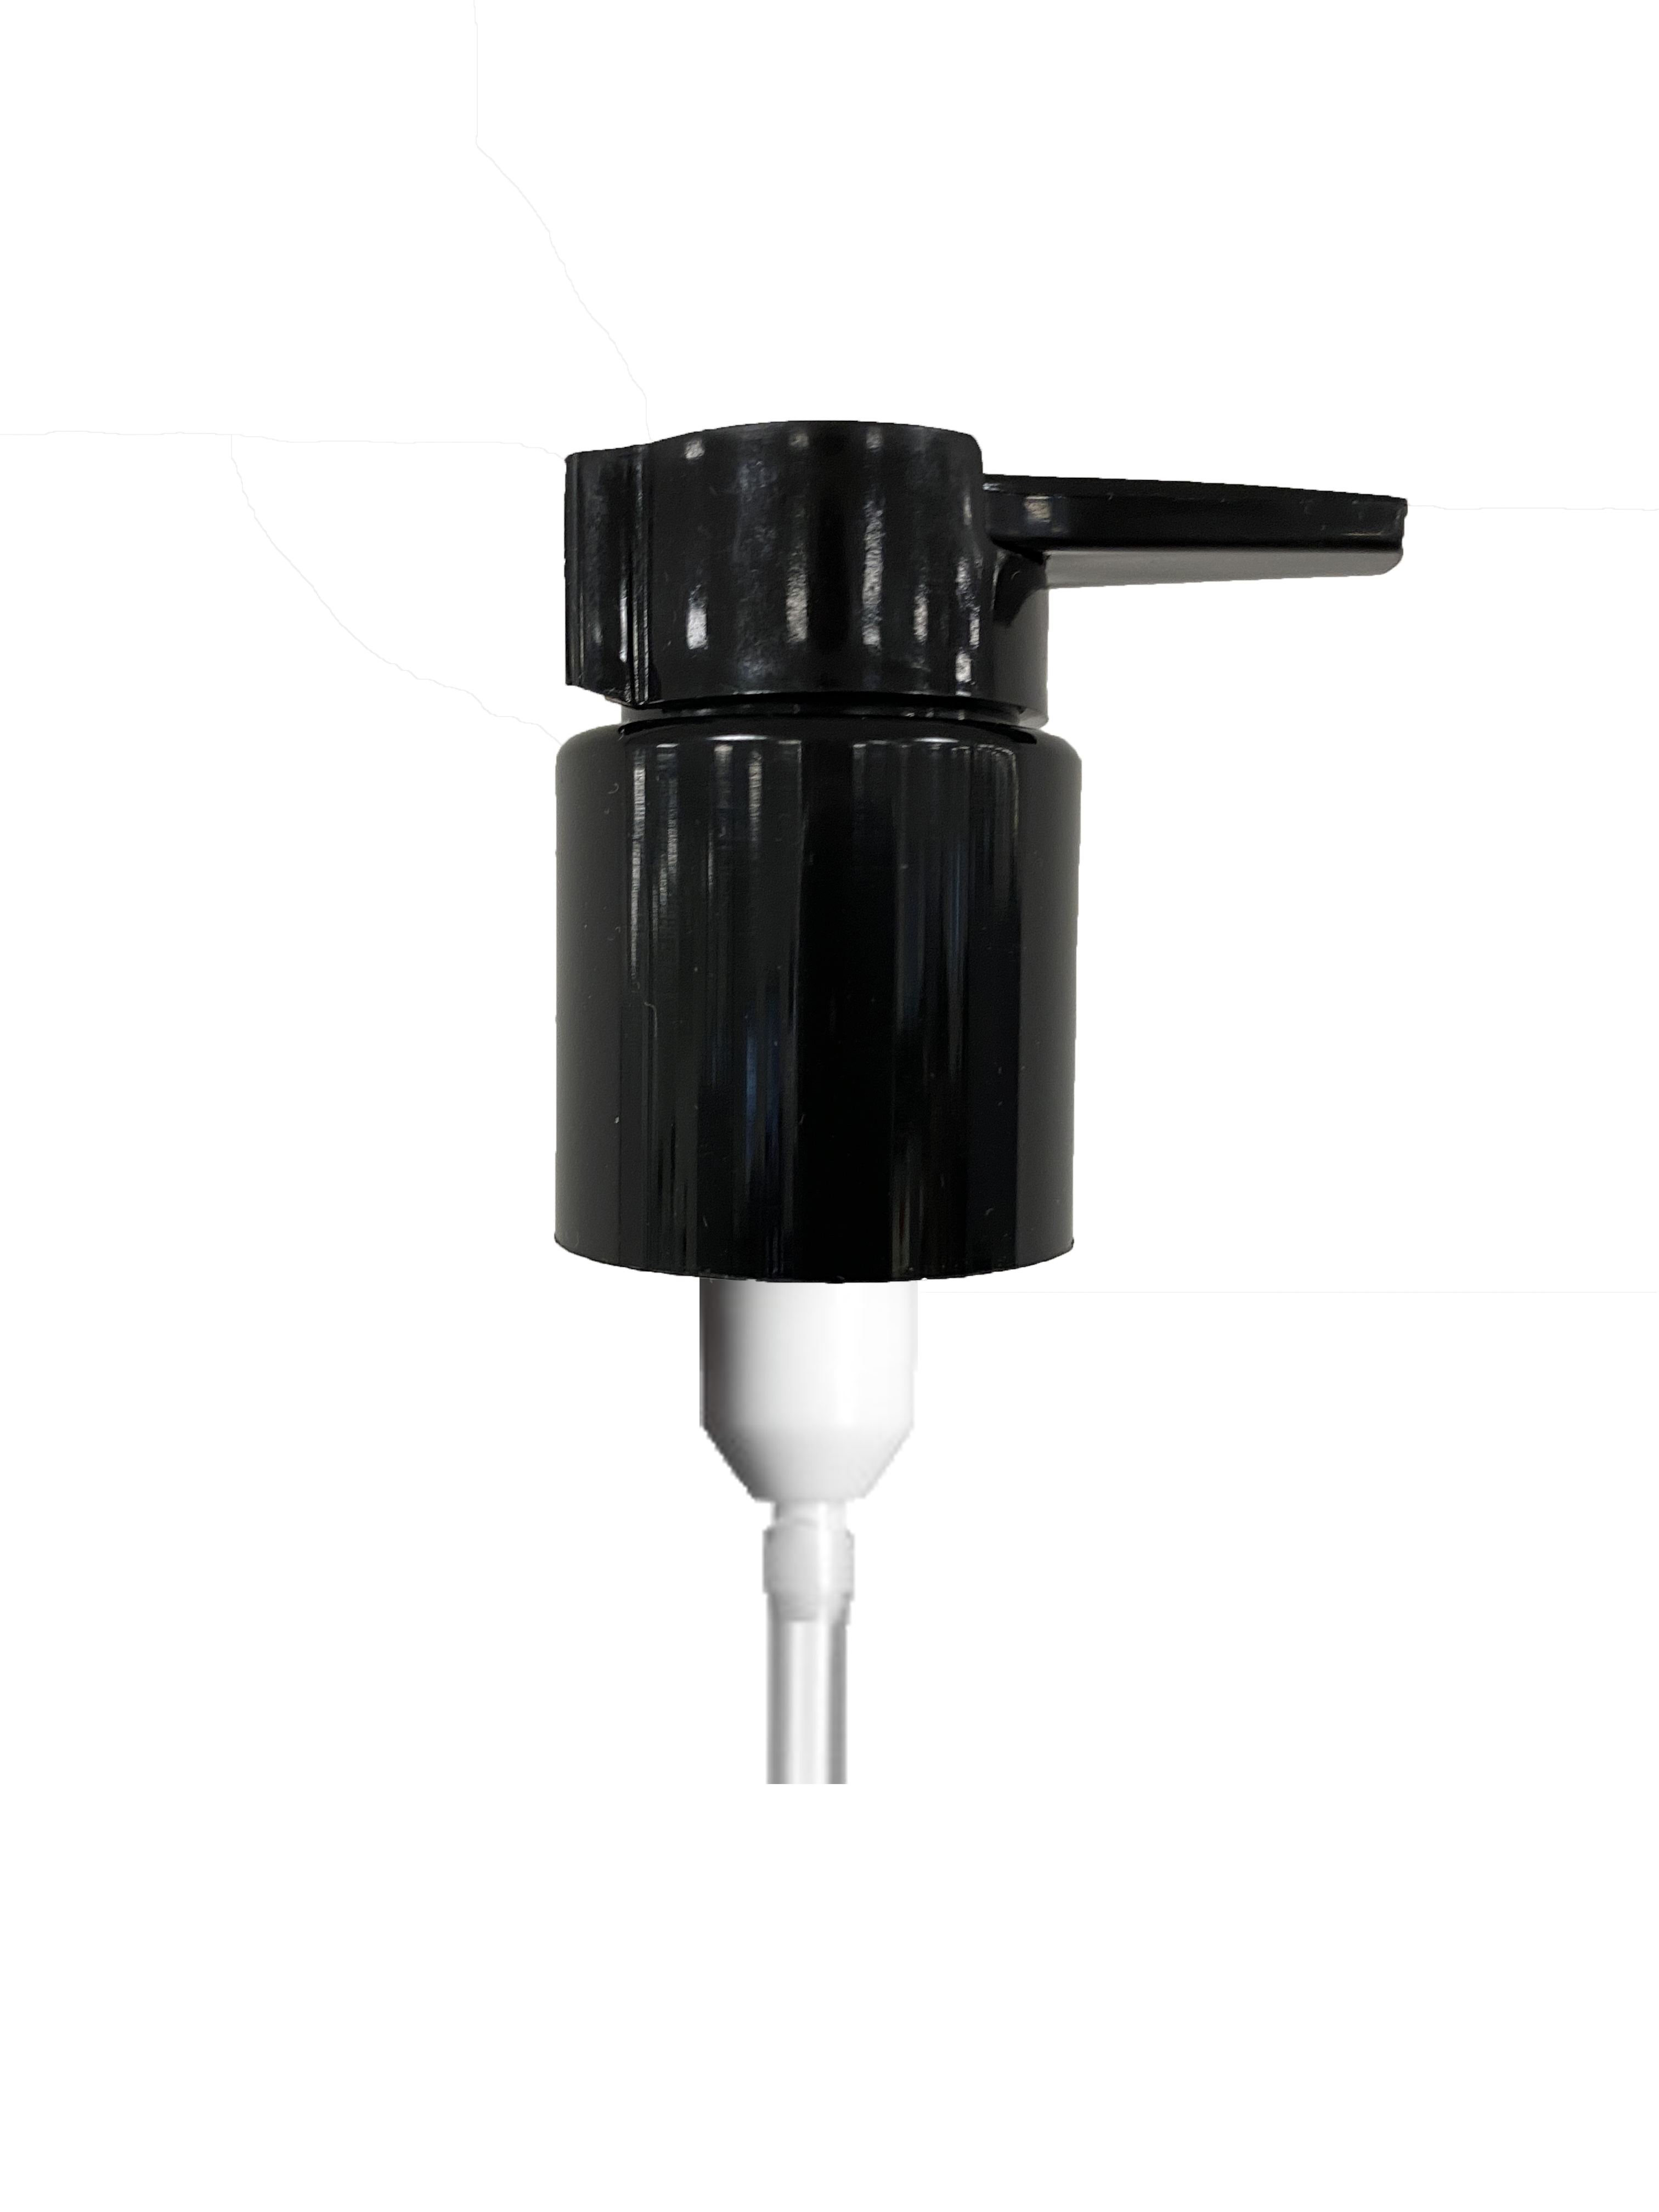 Lotionspumpe Extended Nozzle 24/410, PP, Schwarz, glänzende Oberfläche, Dosierung 0,50 ml, mit 2,0 mm Tri-Seal-Dichtung, schwarzer Sicherheitsclip (Draco 200 ml)